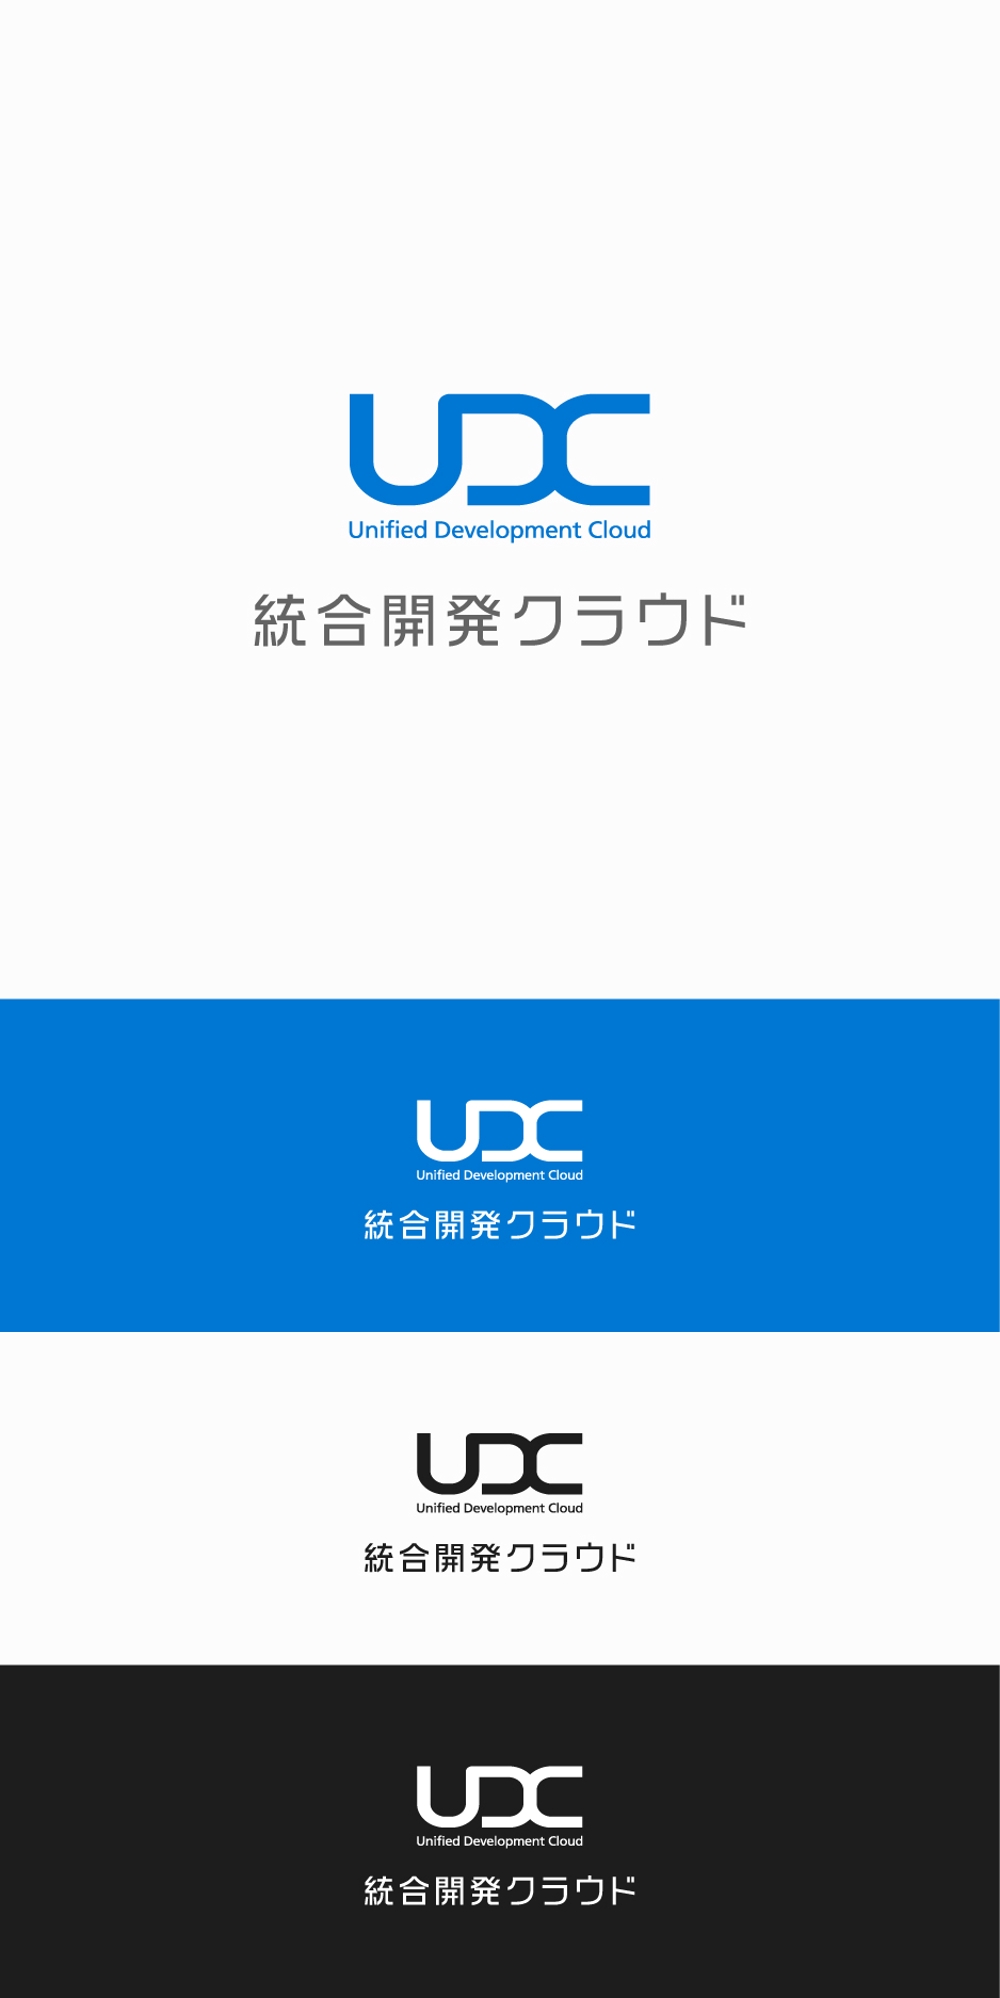 UDC_1.jpg